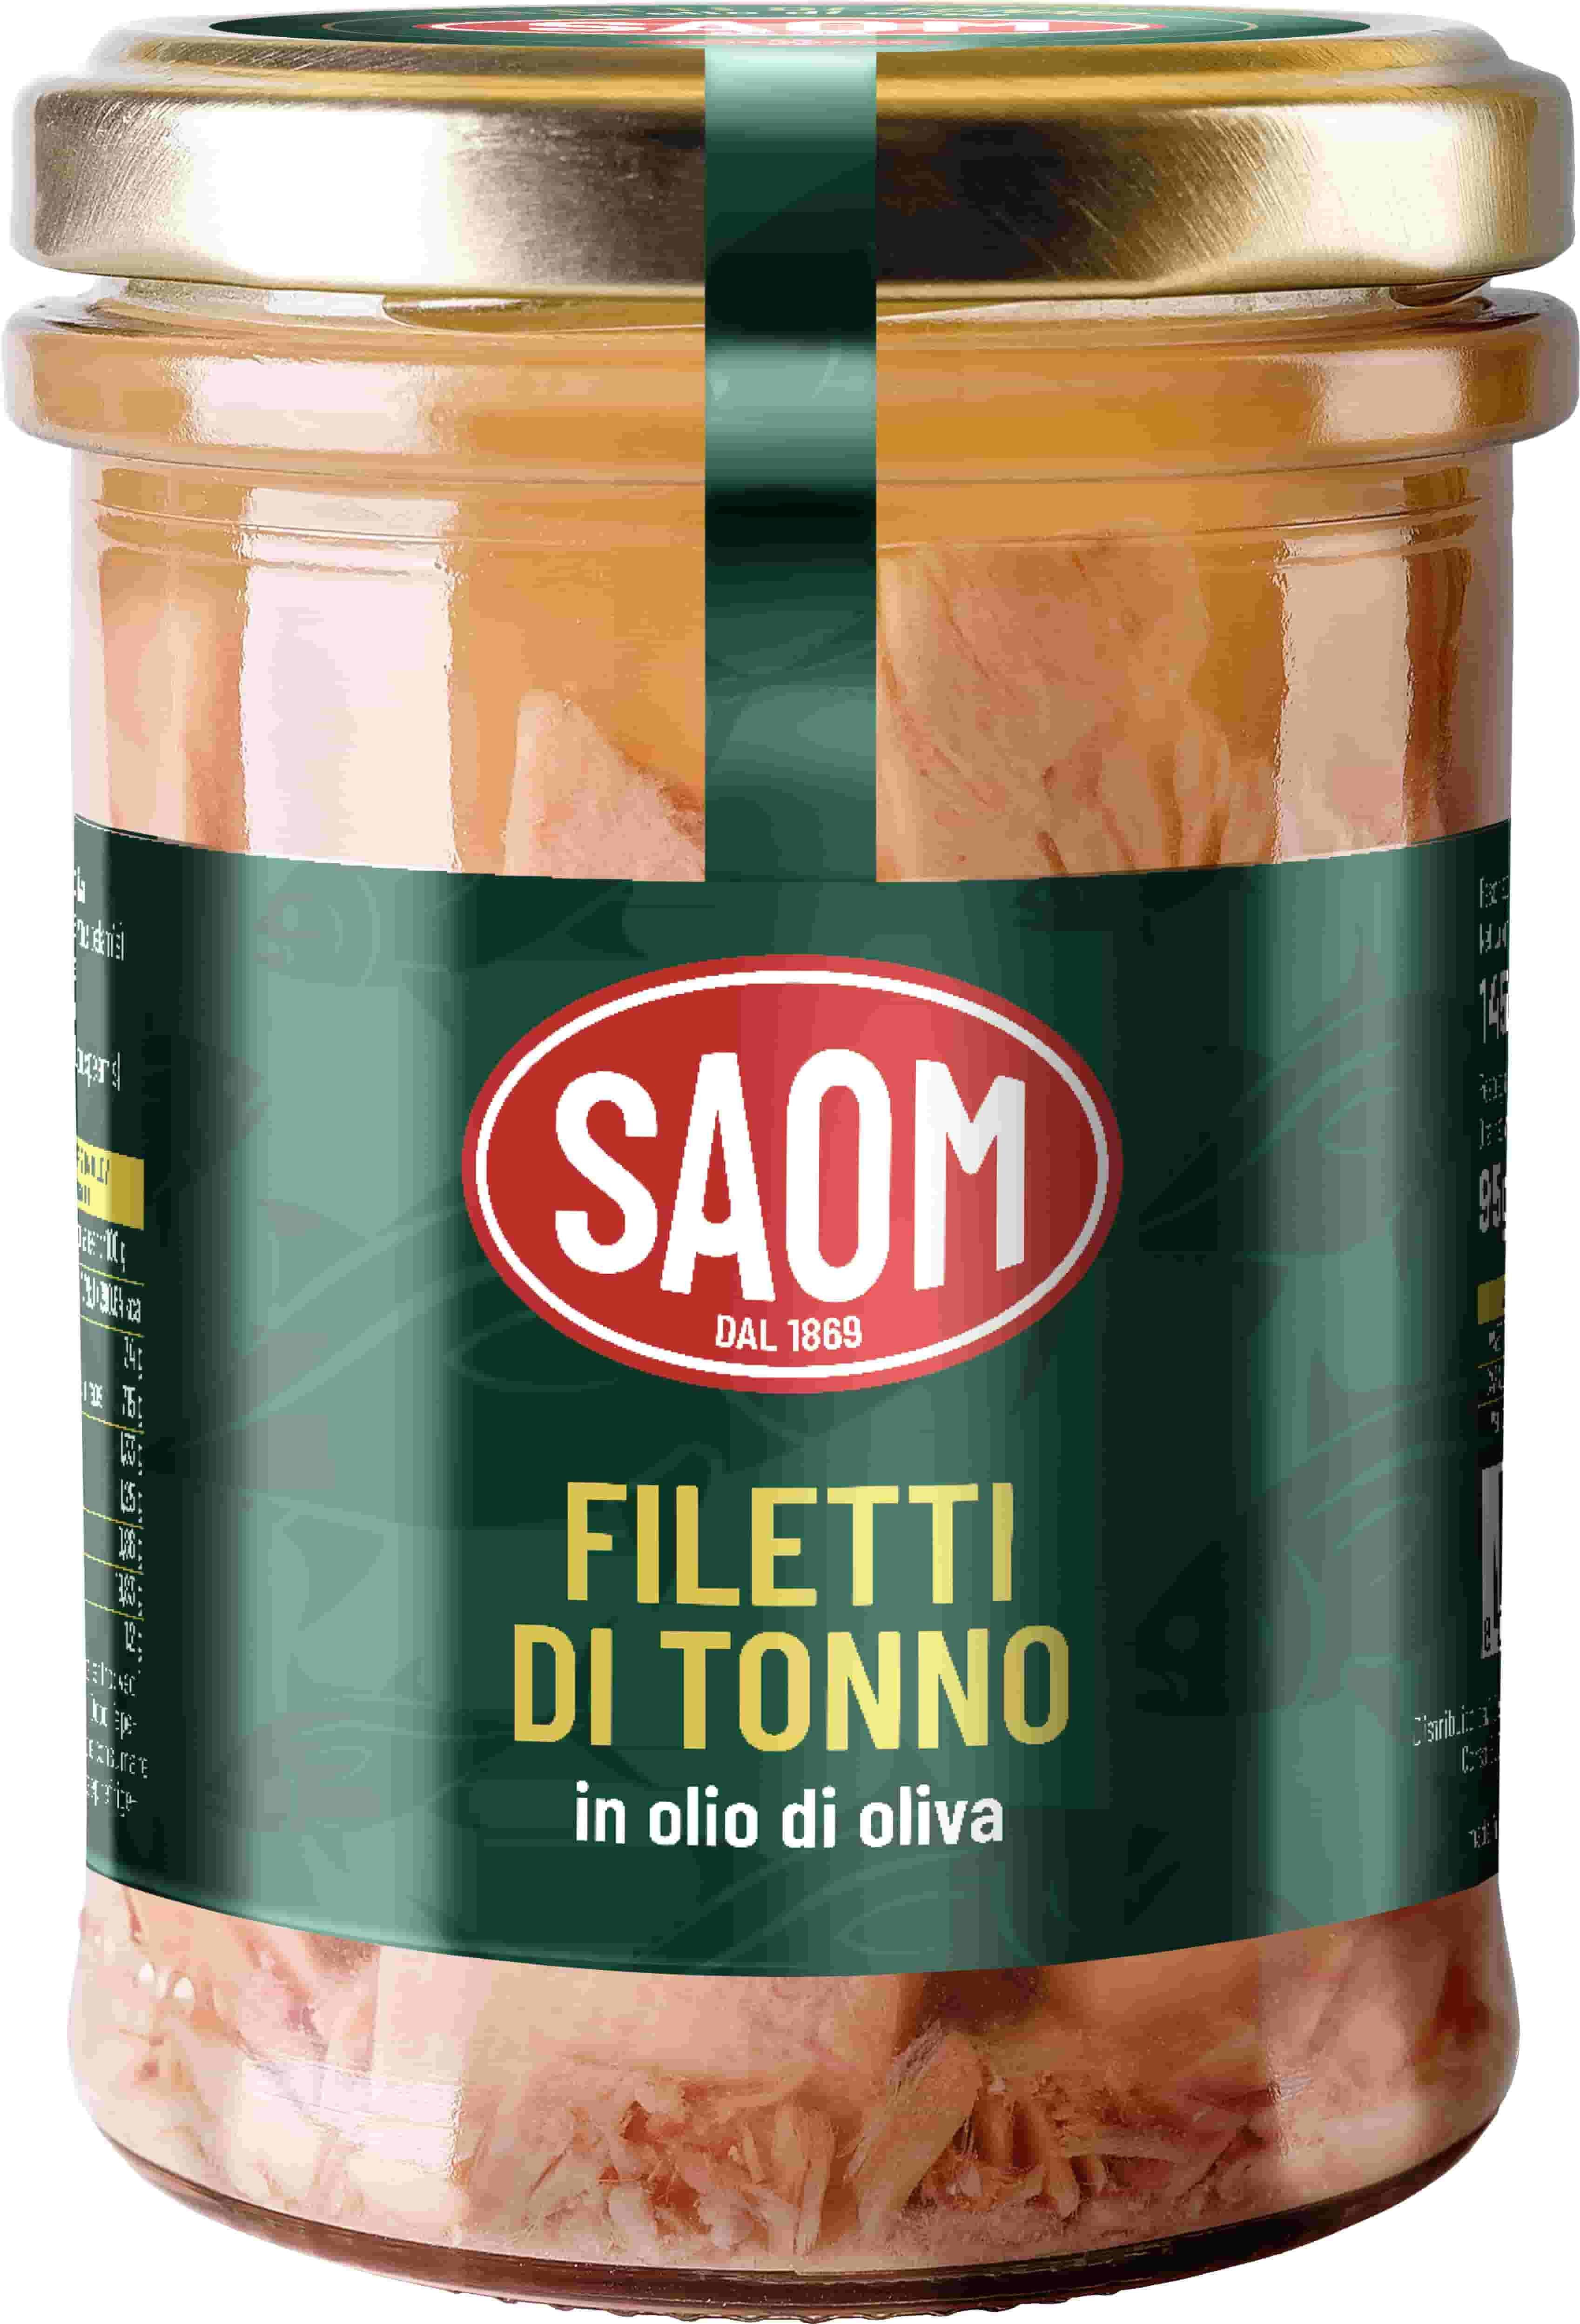 12x Saom Filetti di Tonno in Olio di Oliva da 145gr Qualita' Superiore.